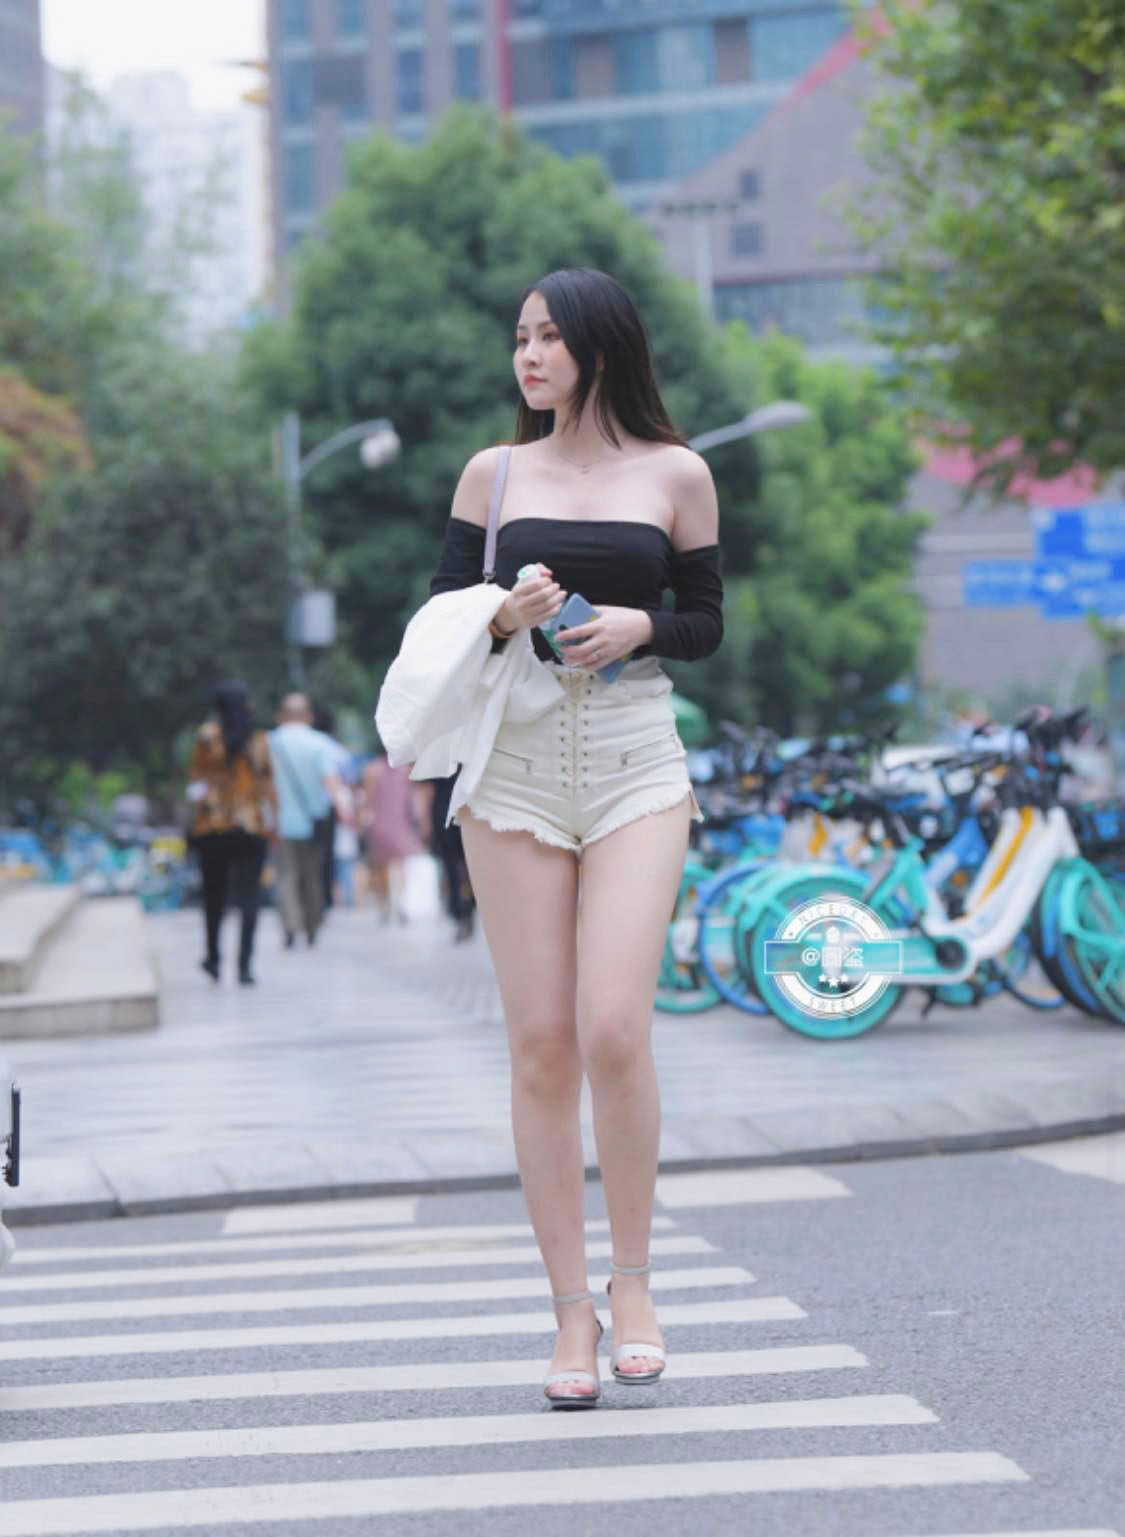 Mỹ nữ thu hút mọi ánh nhìn trên đường phố nhờ mặc áo trễ vai - 3